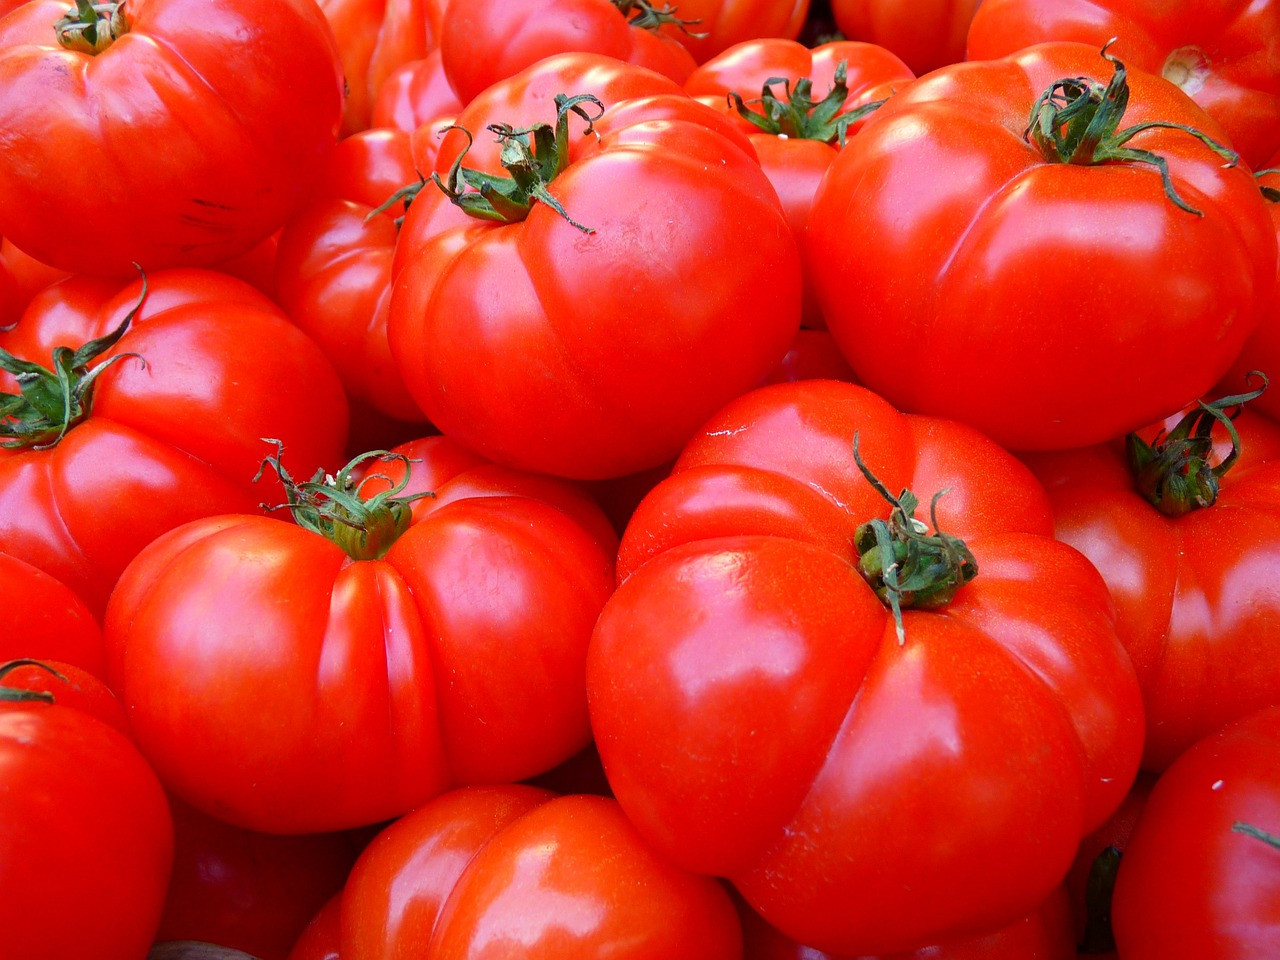 44 тысячи тонн томатов собрано в Липецкой области